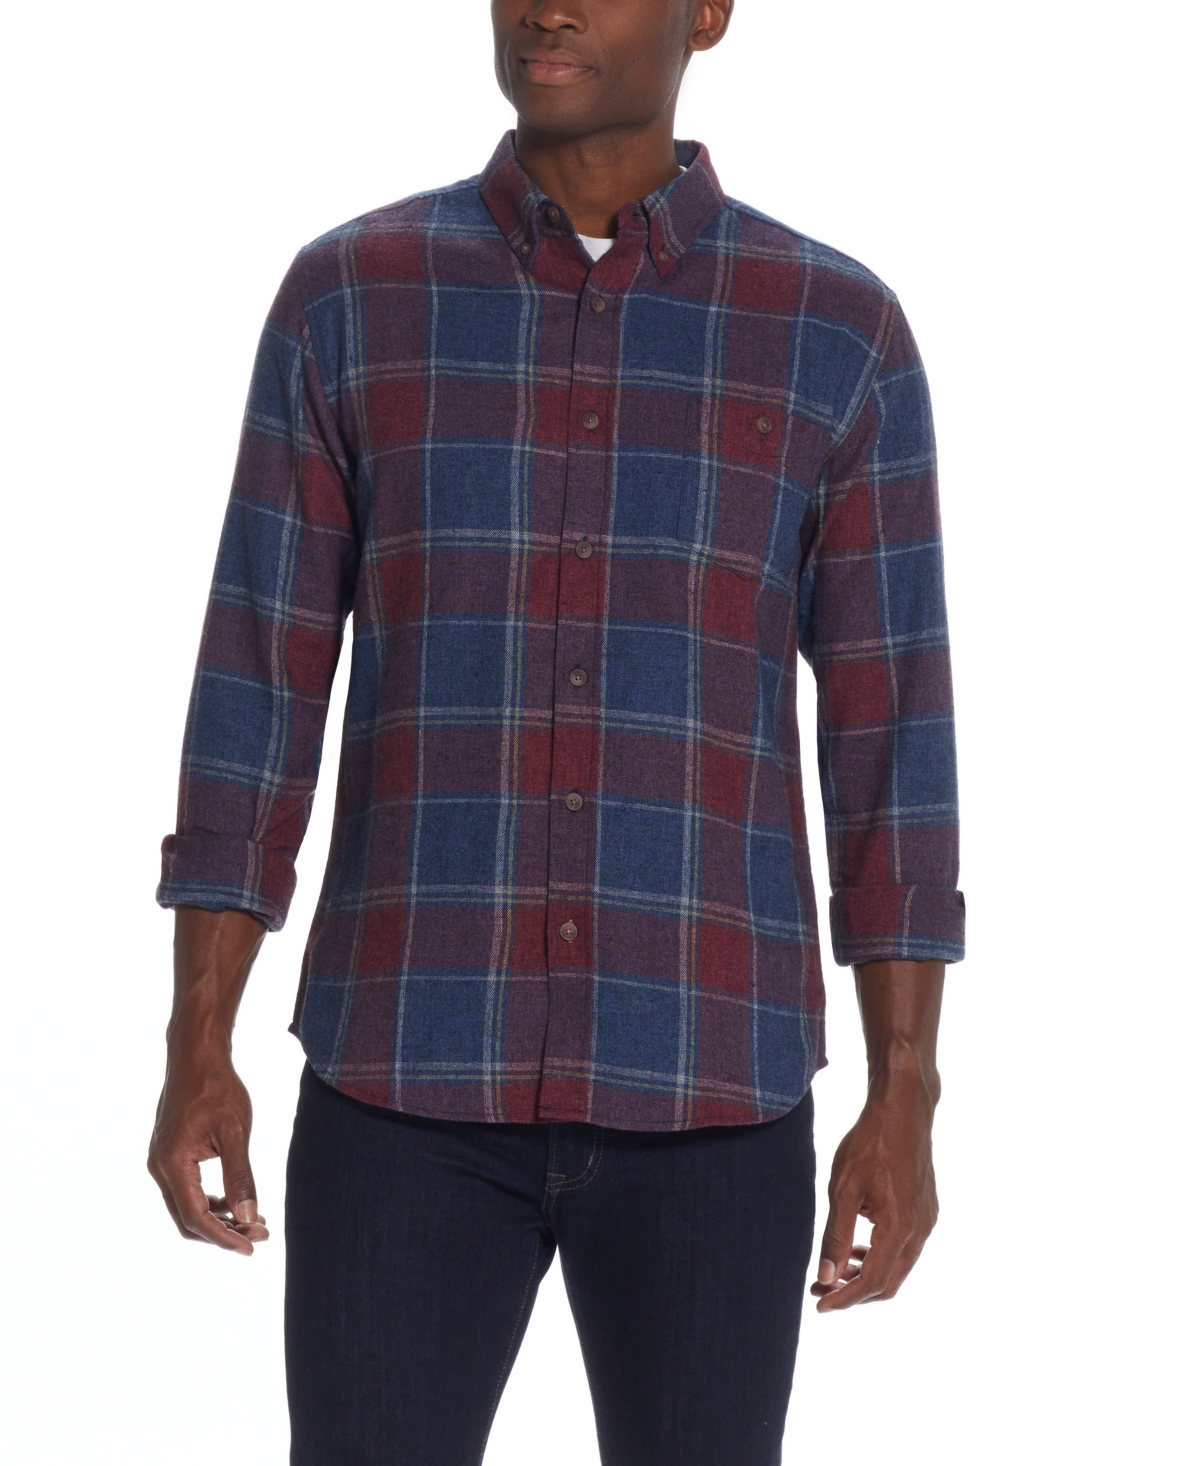 Men's Antique-Like Flannel Shirt - Patriot Blue